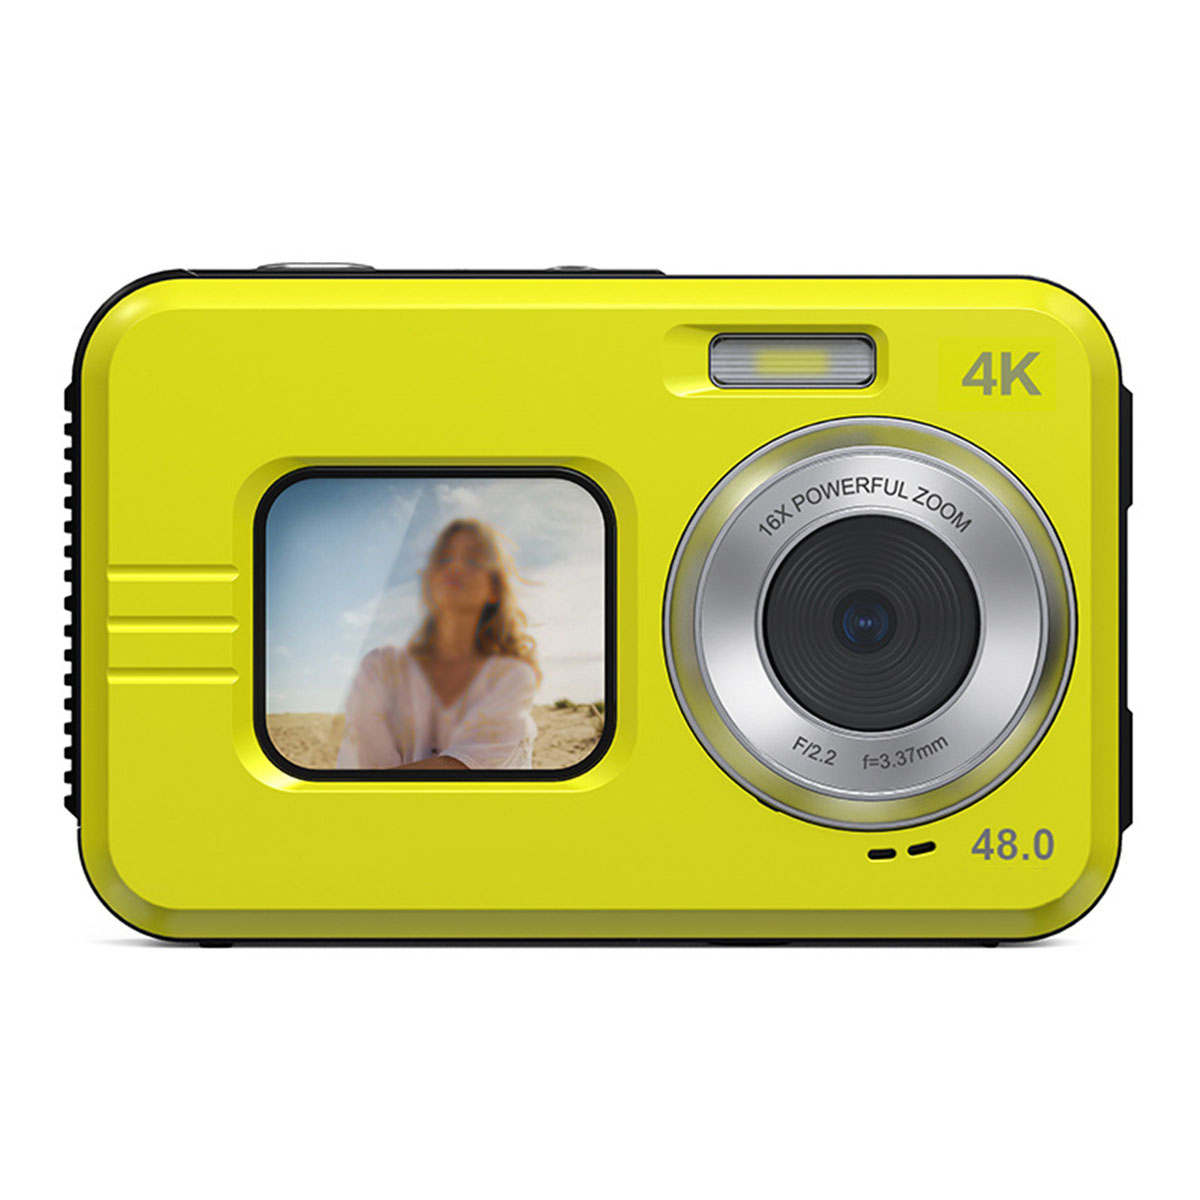 SYNTEK HD Dual Screen - intelligenter Digitalkamera gelb, LCD-Bildschirm Kamera Fotografie Autofokus, Verwacklungsschutz Wasserdichte